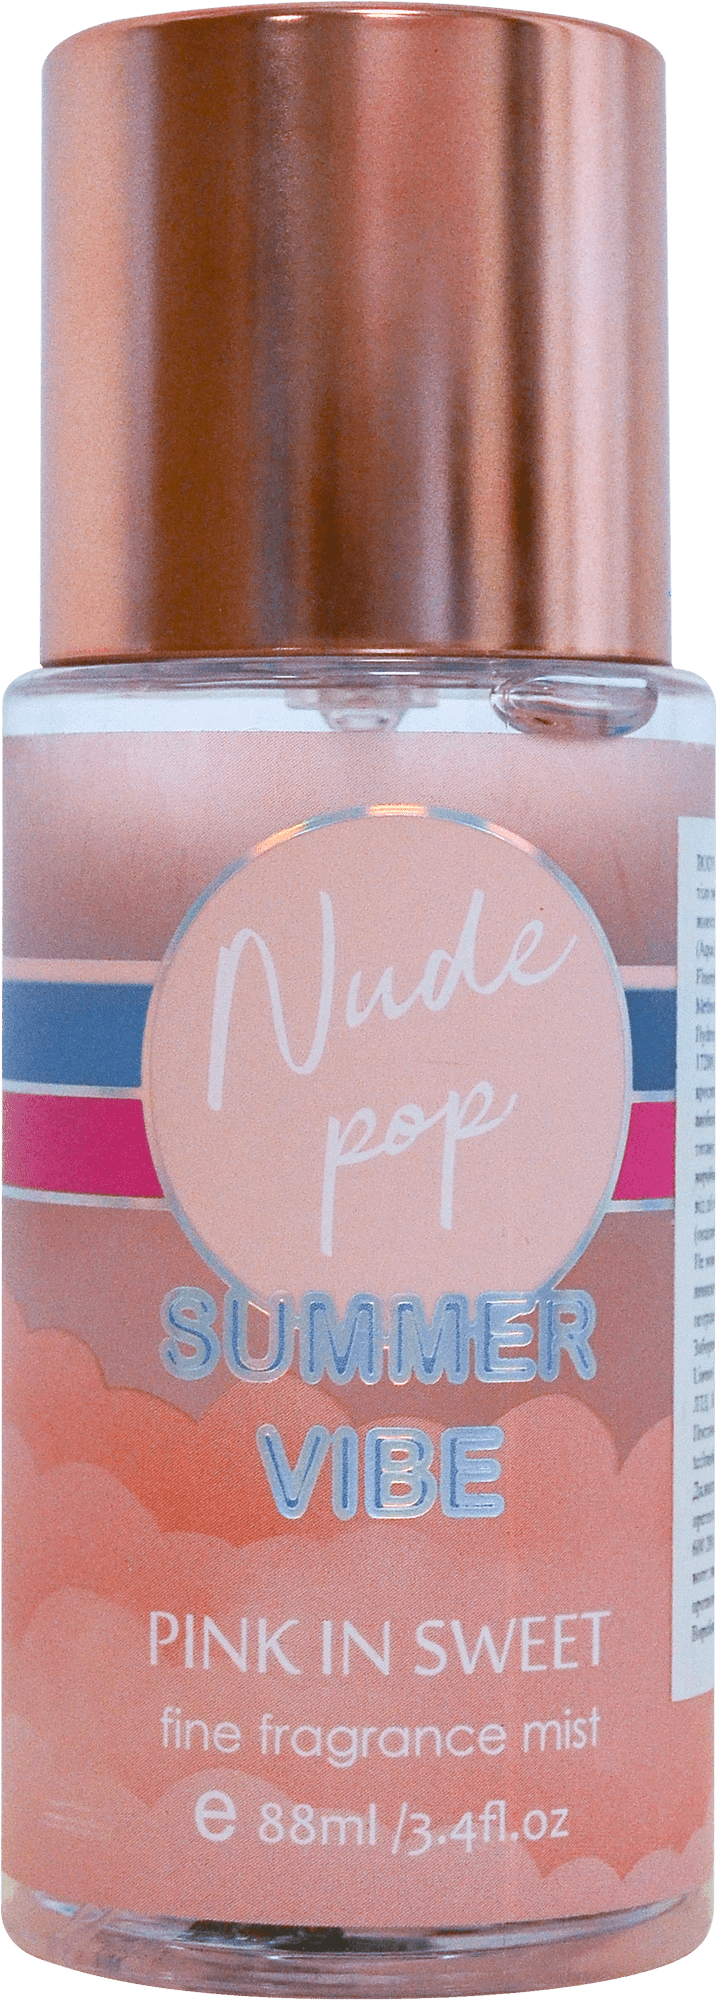 Мыст для тела парфюмированный BODY PHILOSOPHY Nude pop, 88мл